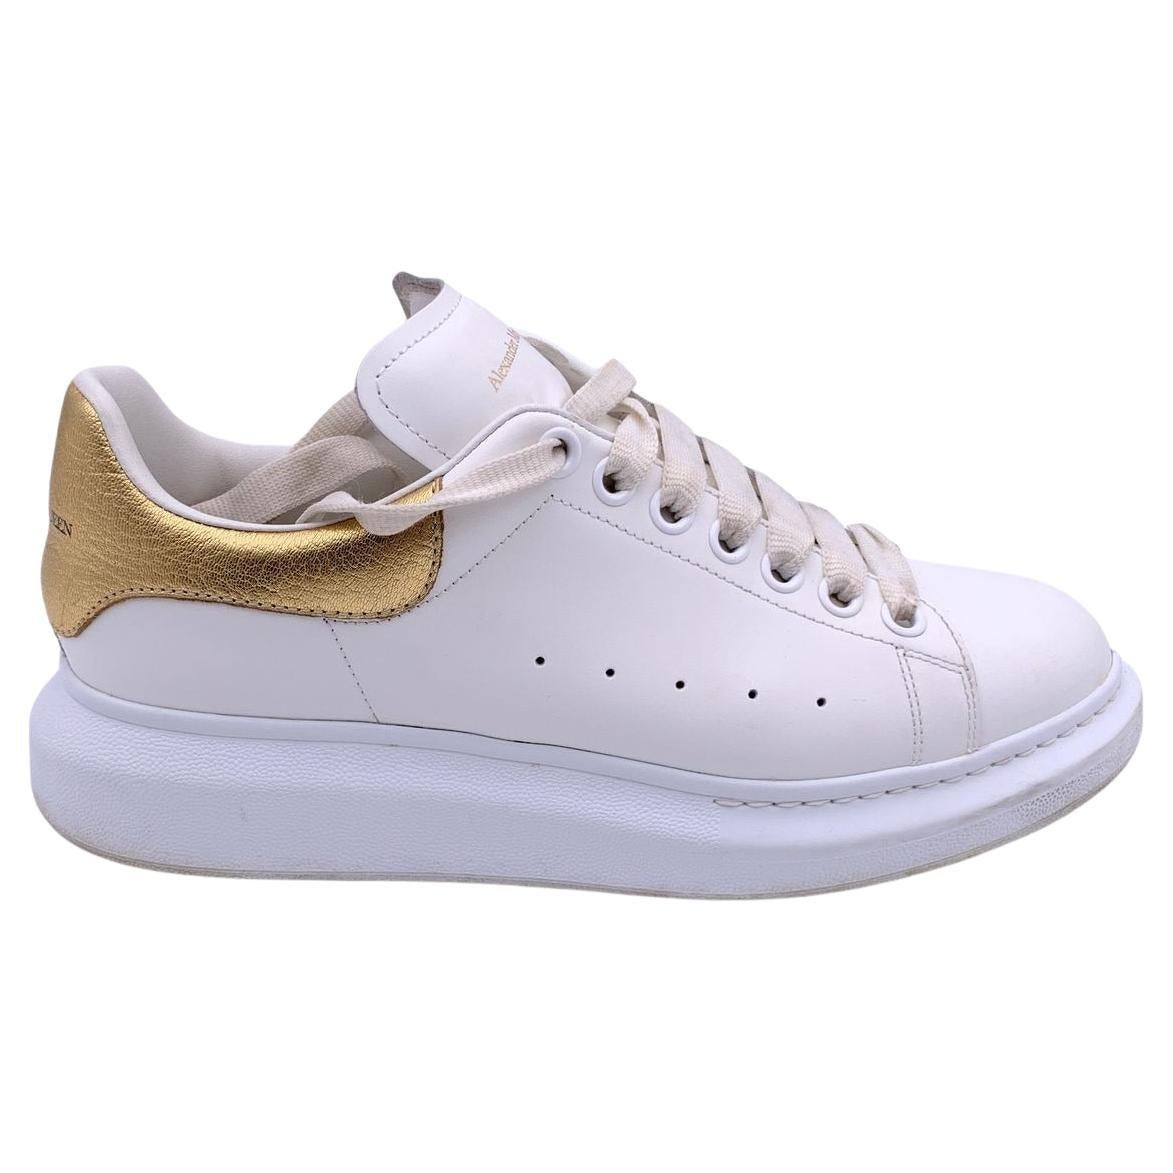 Alexander McQueen - Chaussures de sport à lacets, or blanc, taille 40